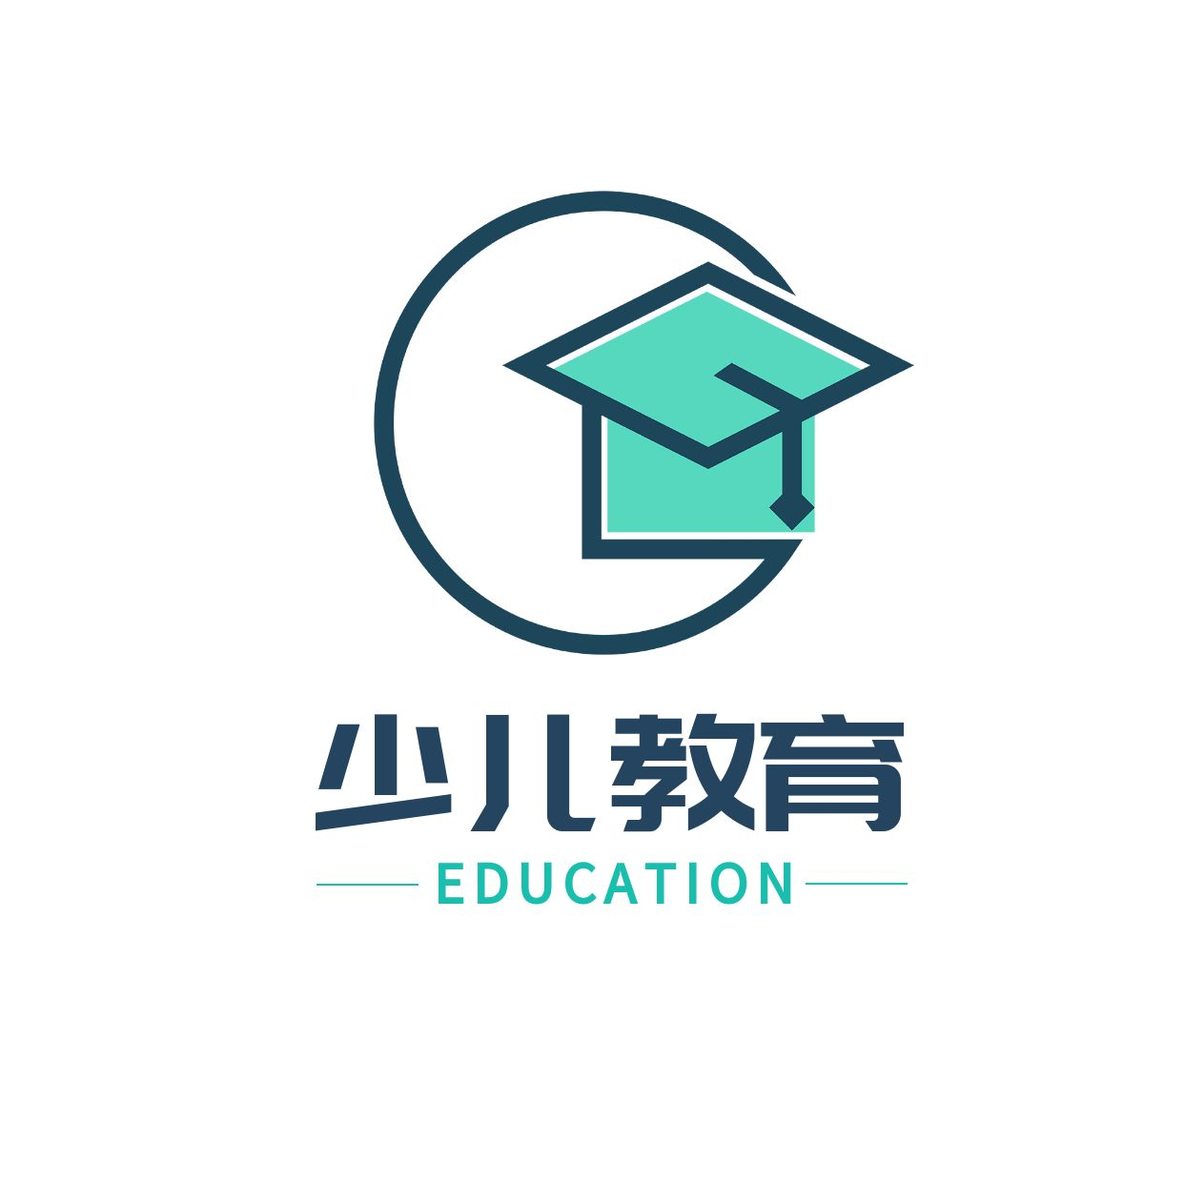 教育圆形博士帽logo